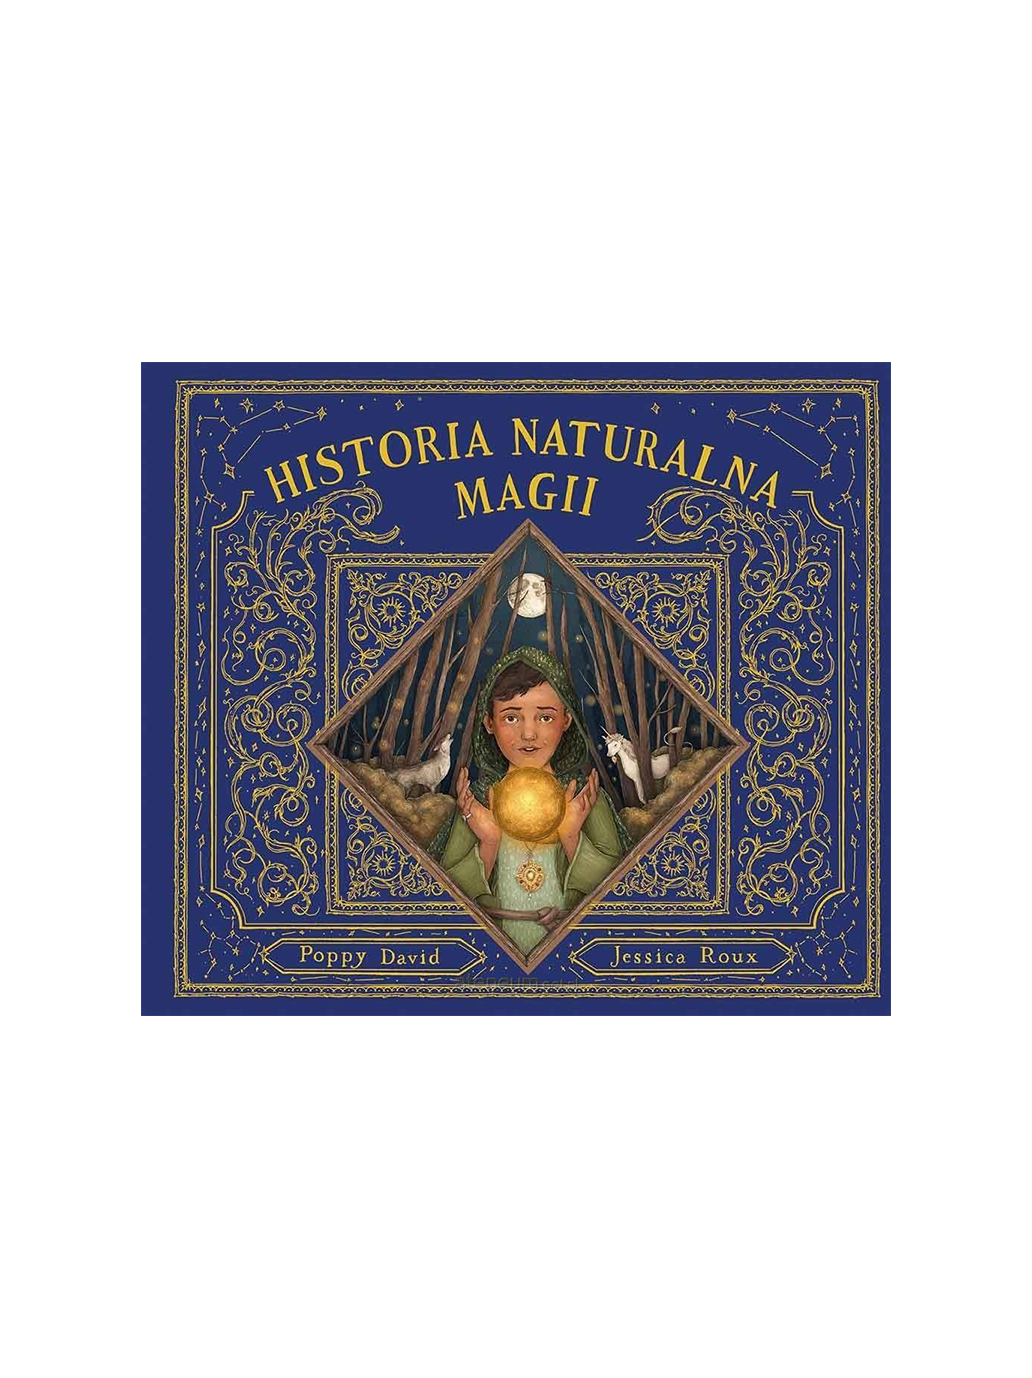 The natural history of magic